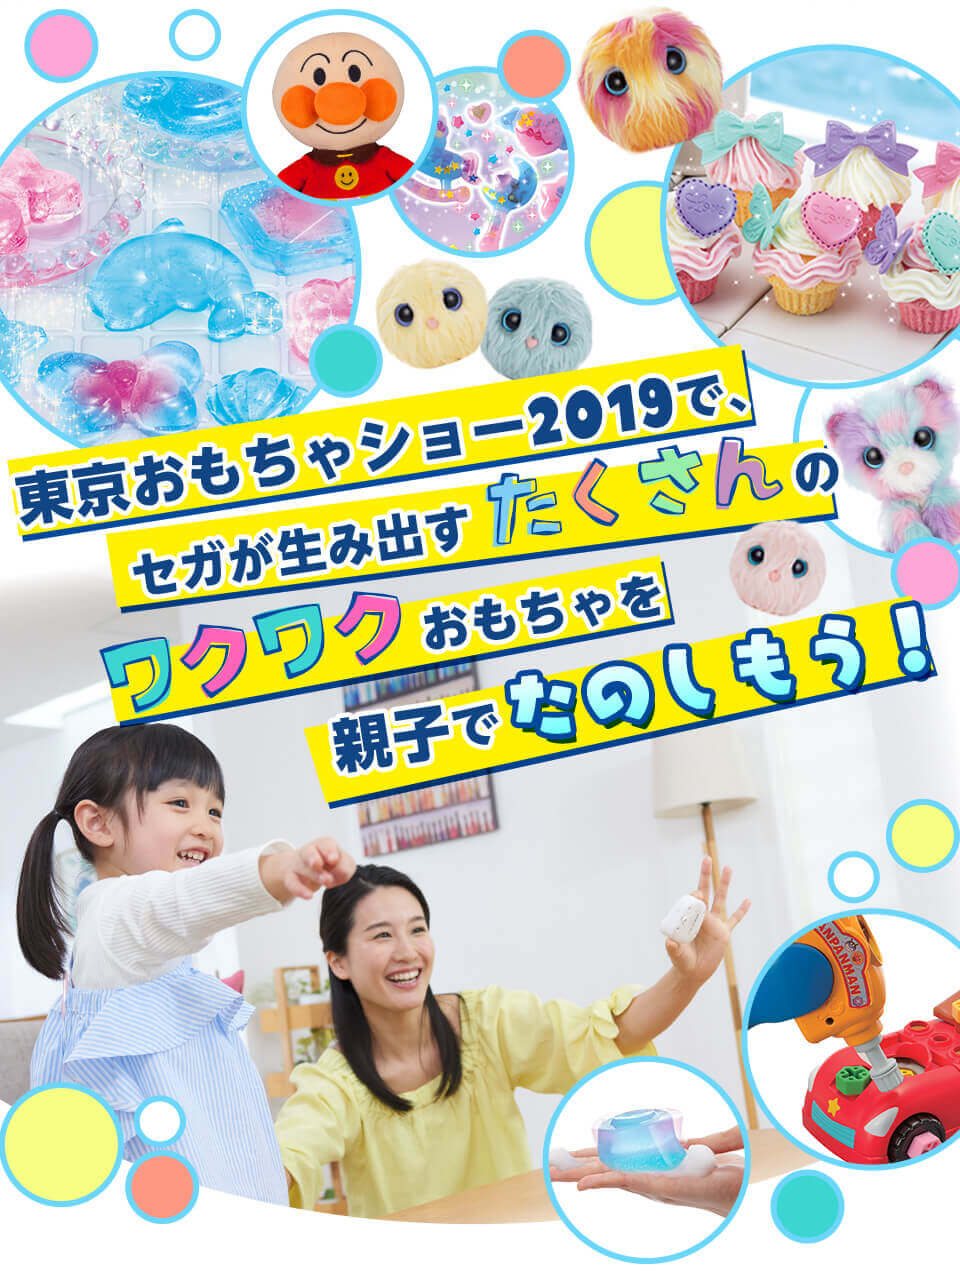 東京おもちゃショー2019 セガトイズブースでワクワク体験を ワンダフルチャンネル ハンドメイドシリーズ アンパンマン メガドライブミニ vtuber